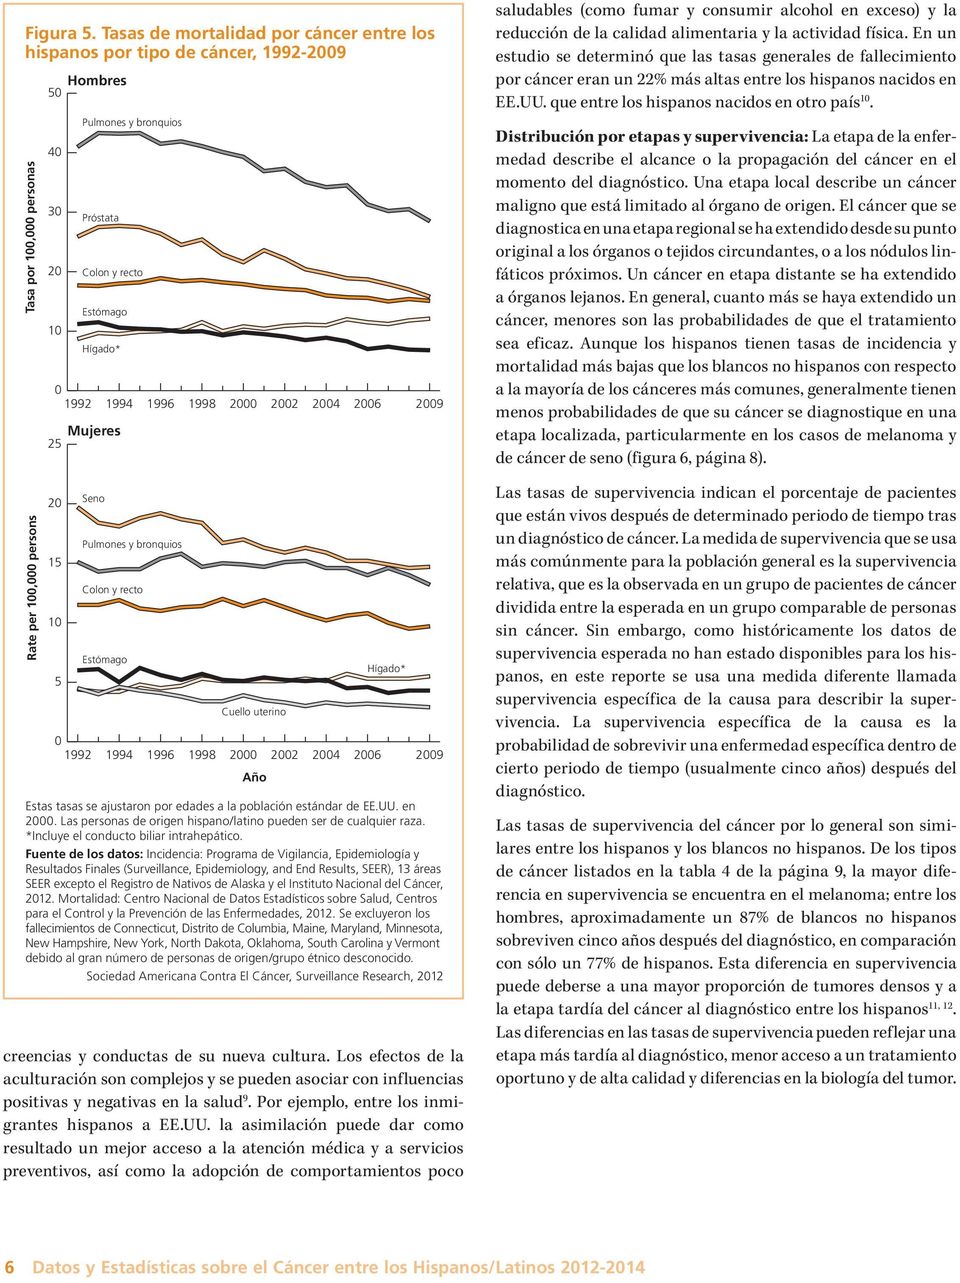 4 entre las mujeres blancas no hispanas. La tasa de incidencia de cáncer de seno entre las mujeres hispanas es 26% menor que la de las mujeres blancas no hispanas (tabla 3, página 4).